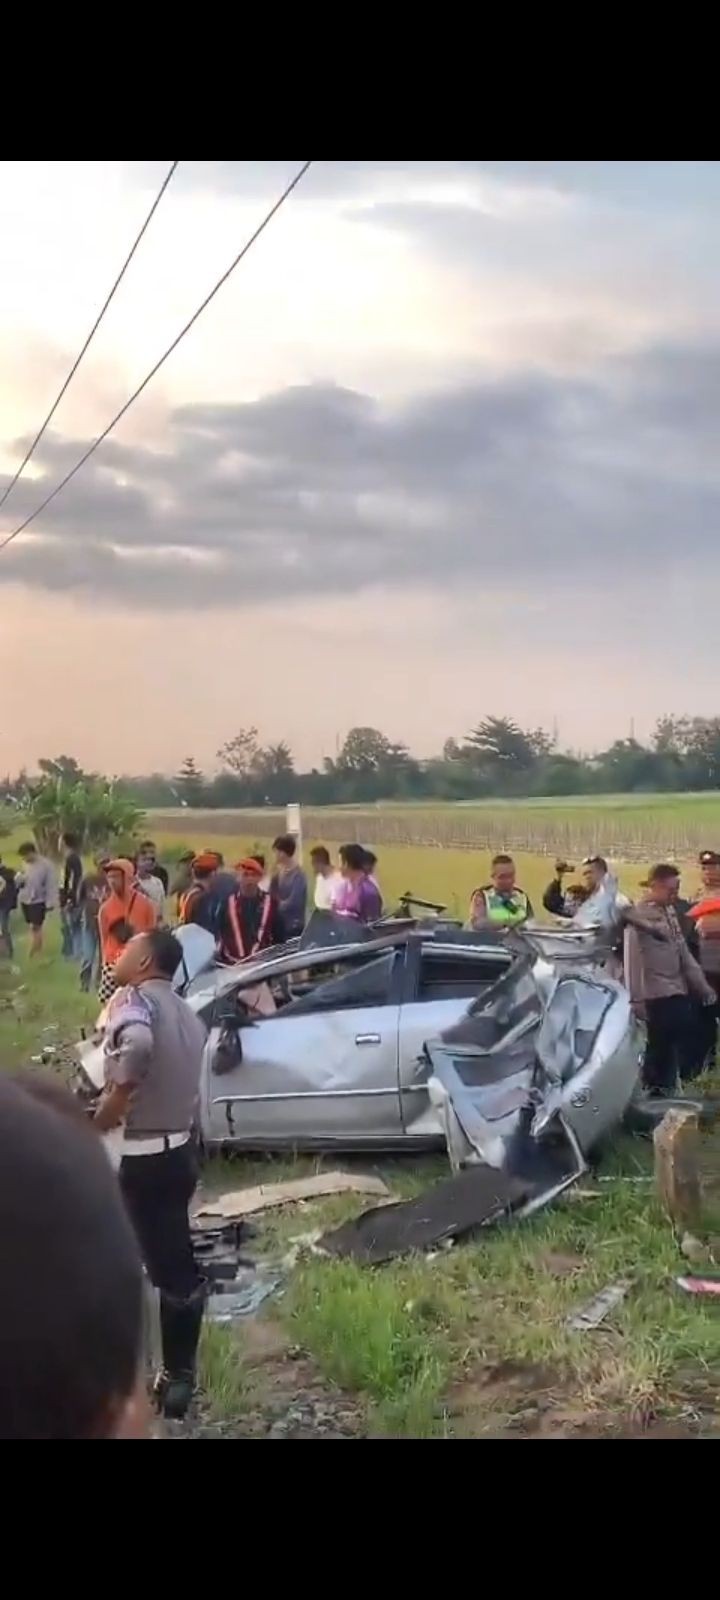 KA Gaya Baru Tertemper Mobil di Prambanan, 2 Orang Meninggal